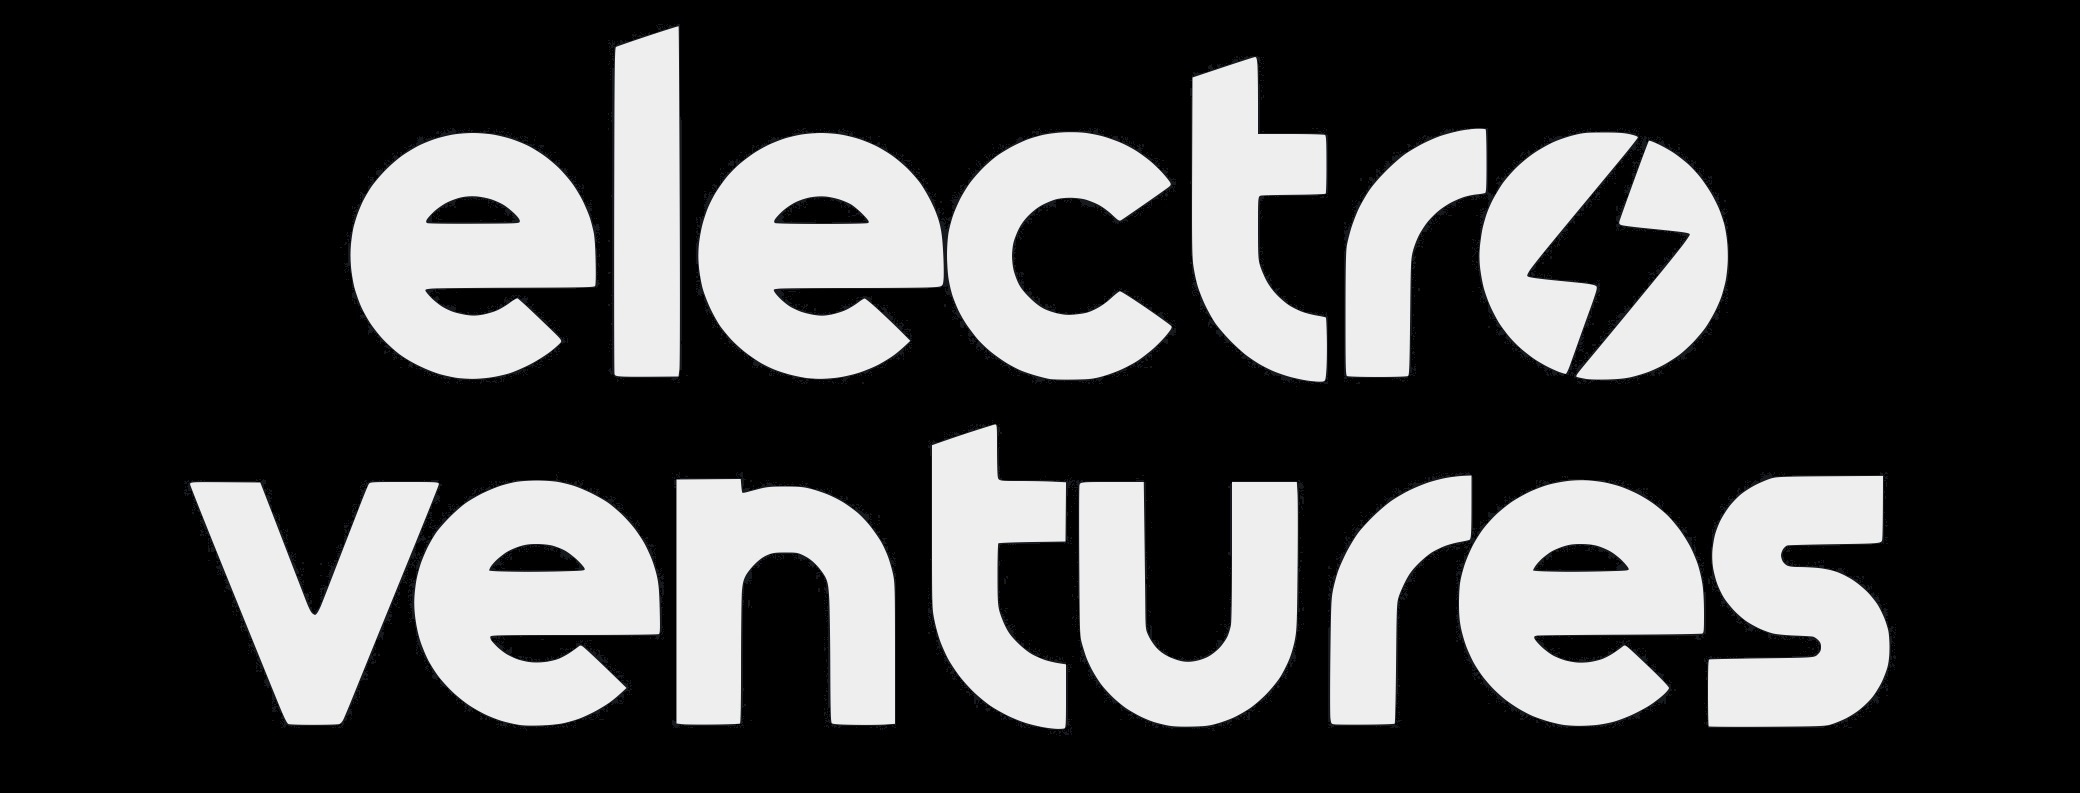 Electro Venture Holdings Pty Ltd